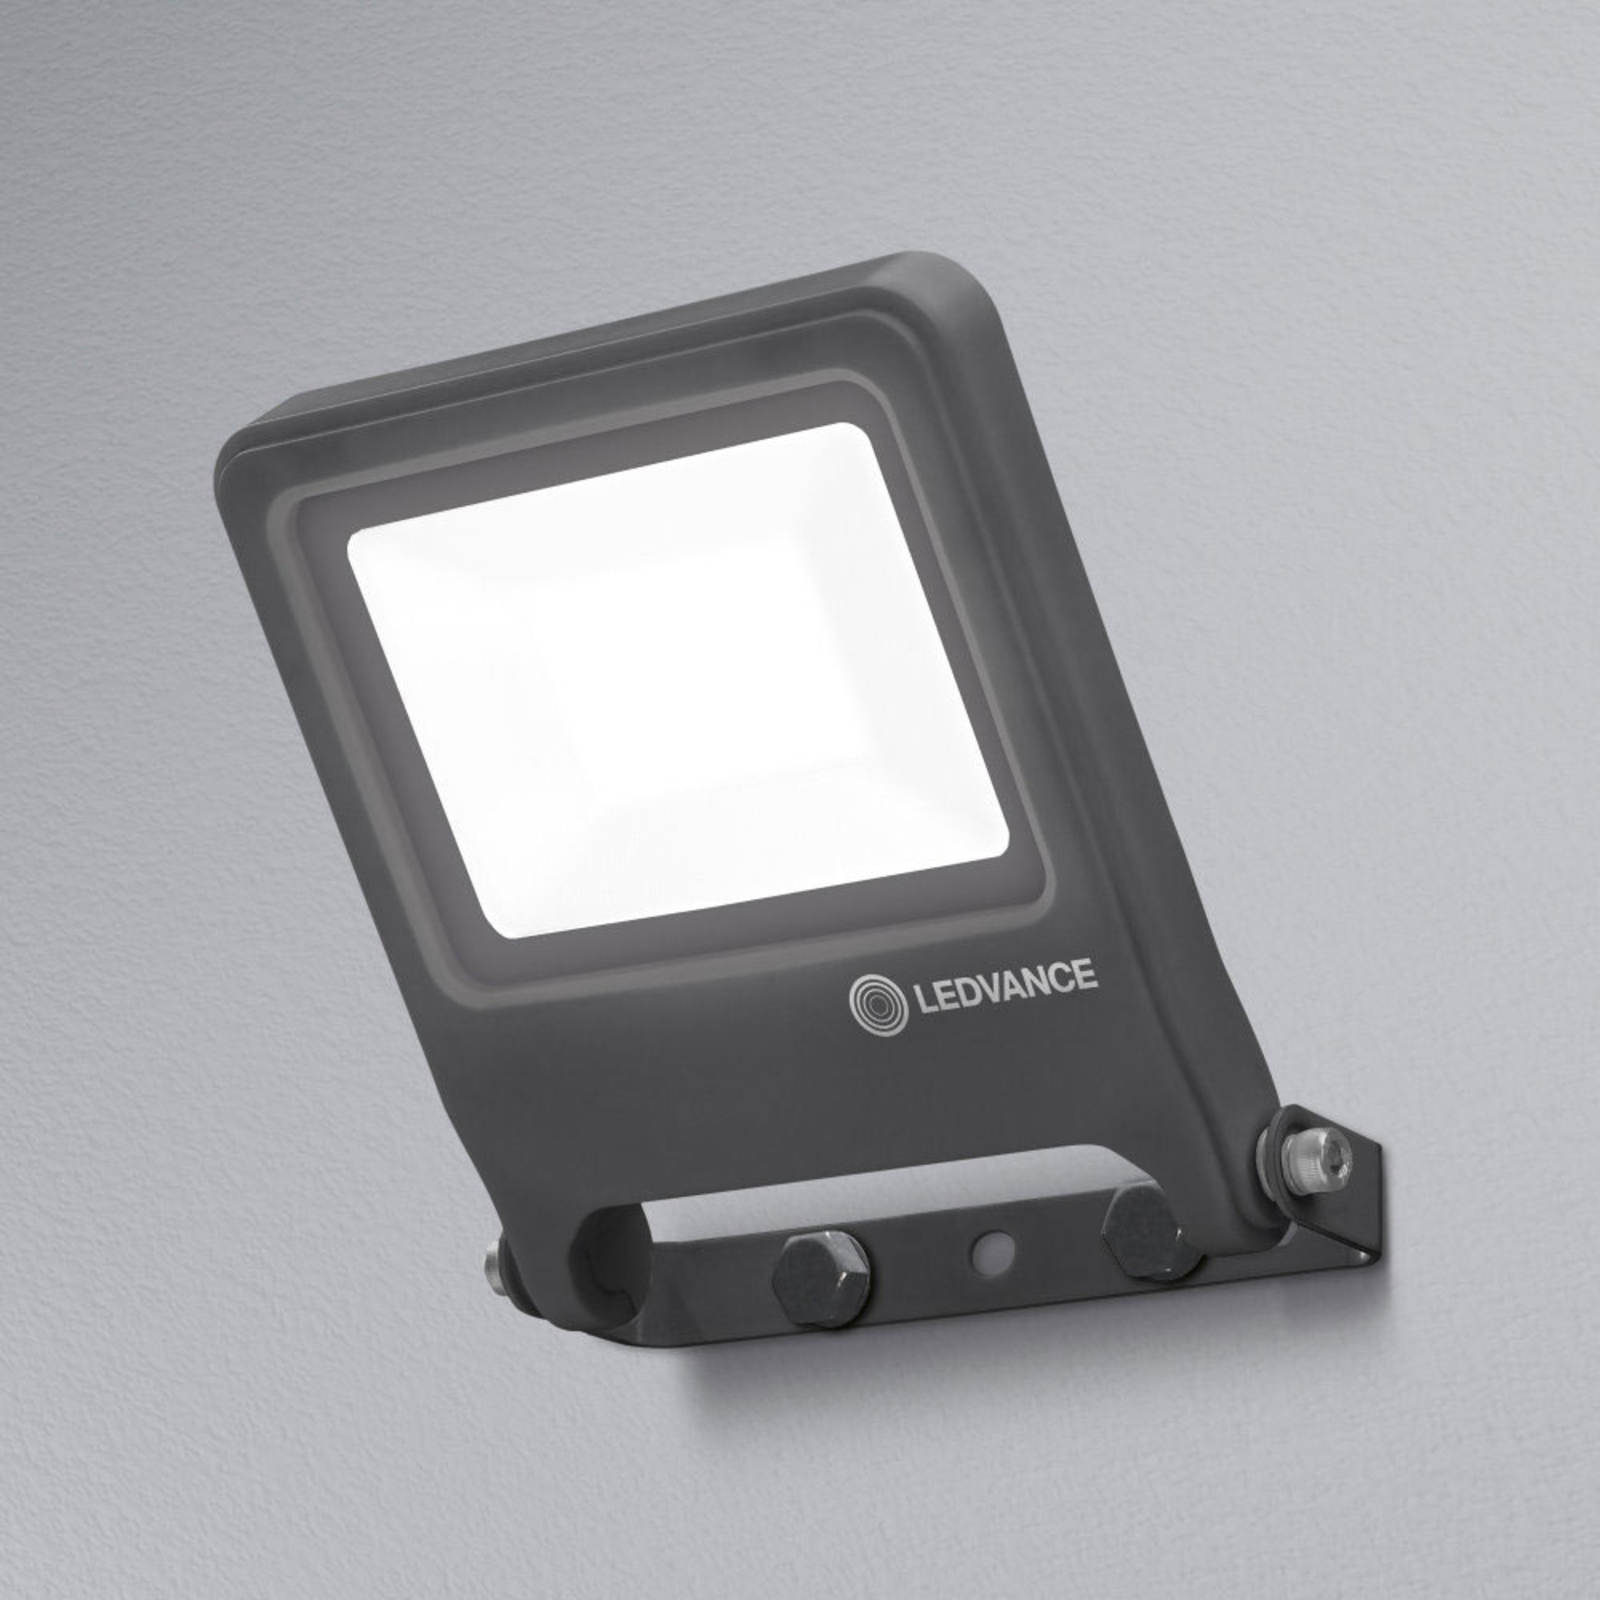 LEDVANCE Endura Floodlight proiector LED ext 20W